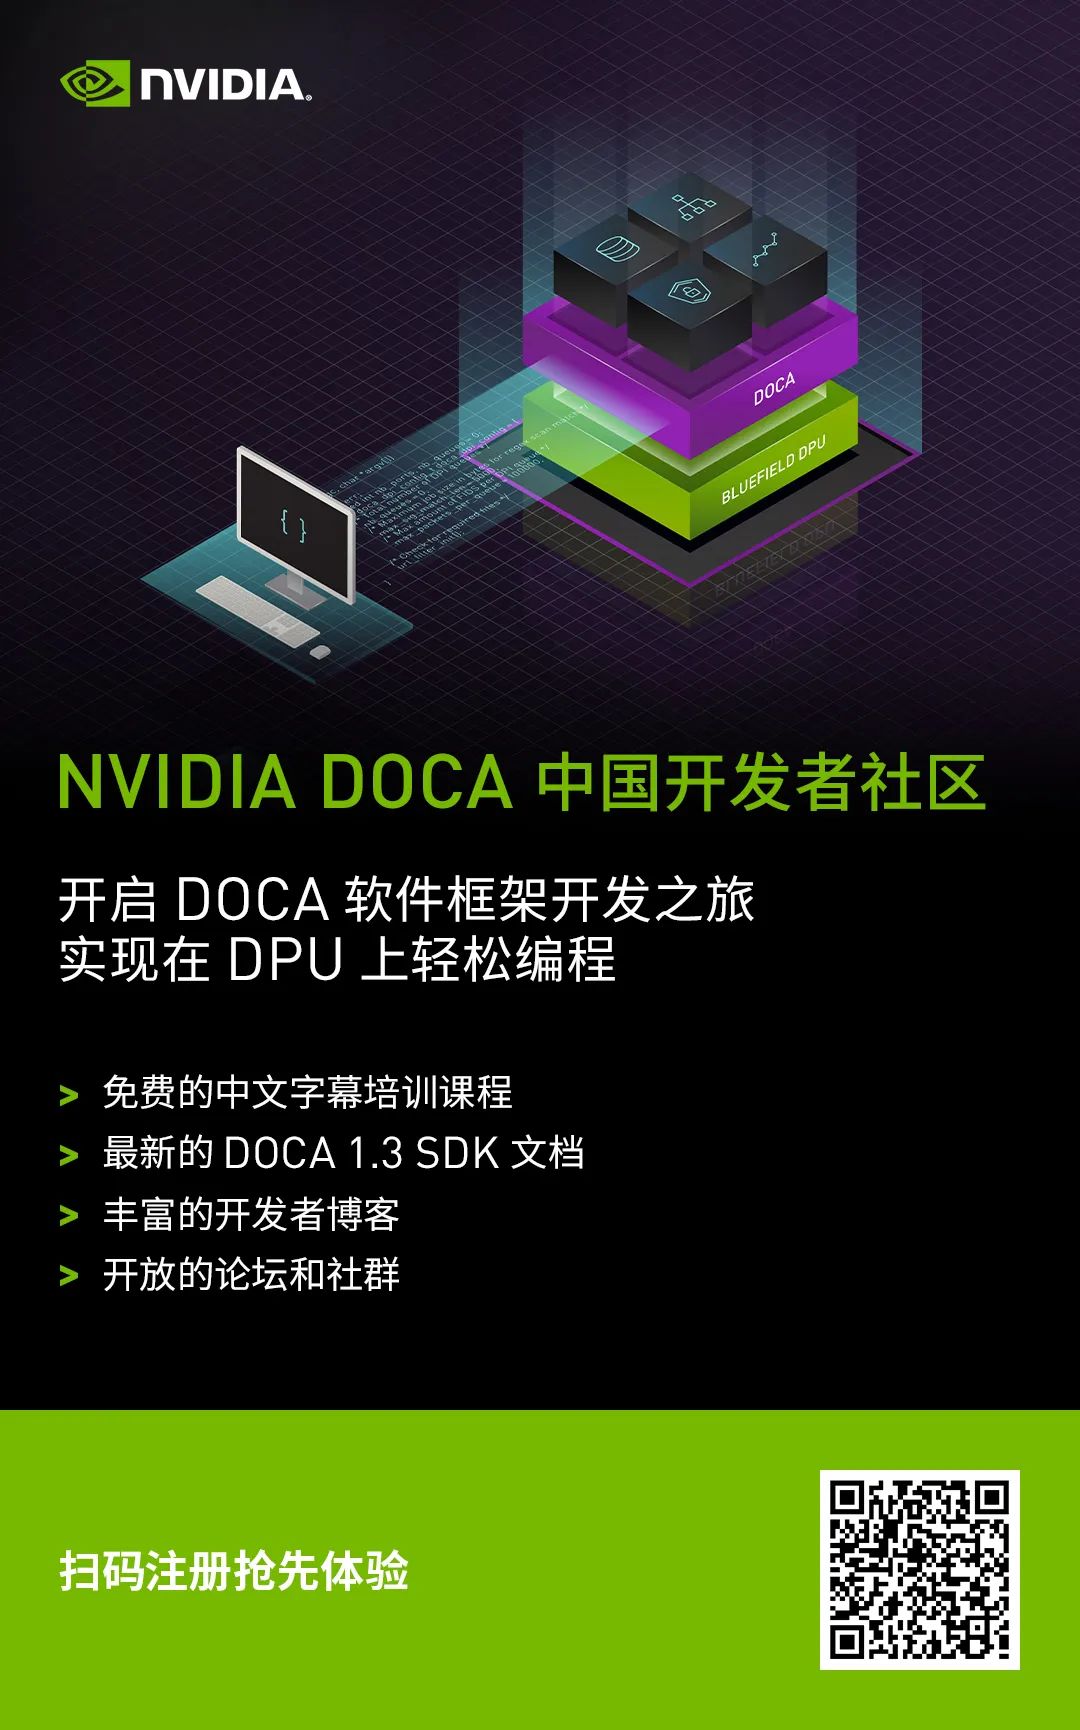 NVIDIA DOCA 1.4 持续增强数据中心基础设施服务